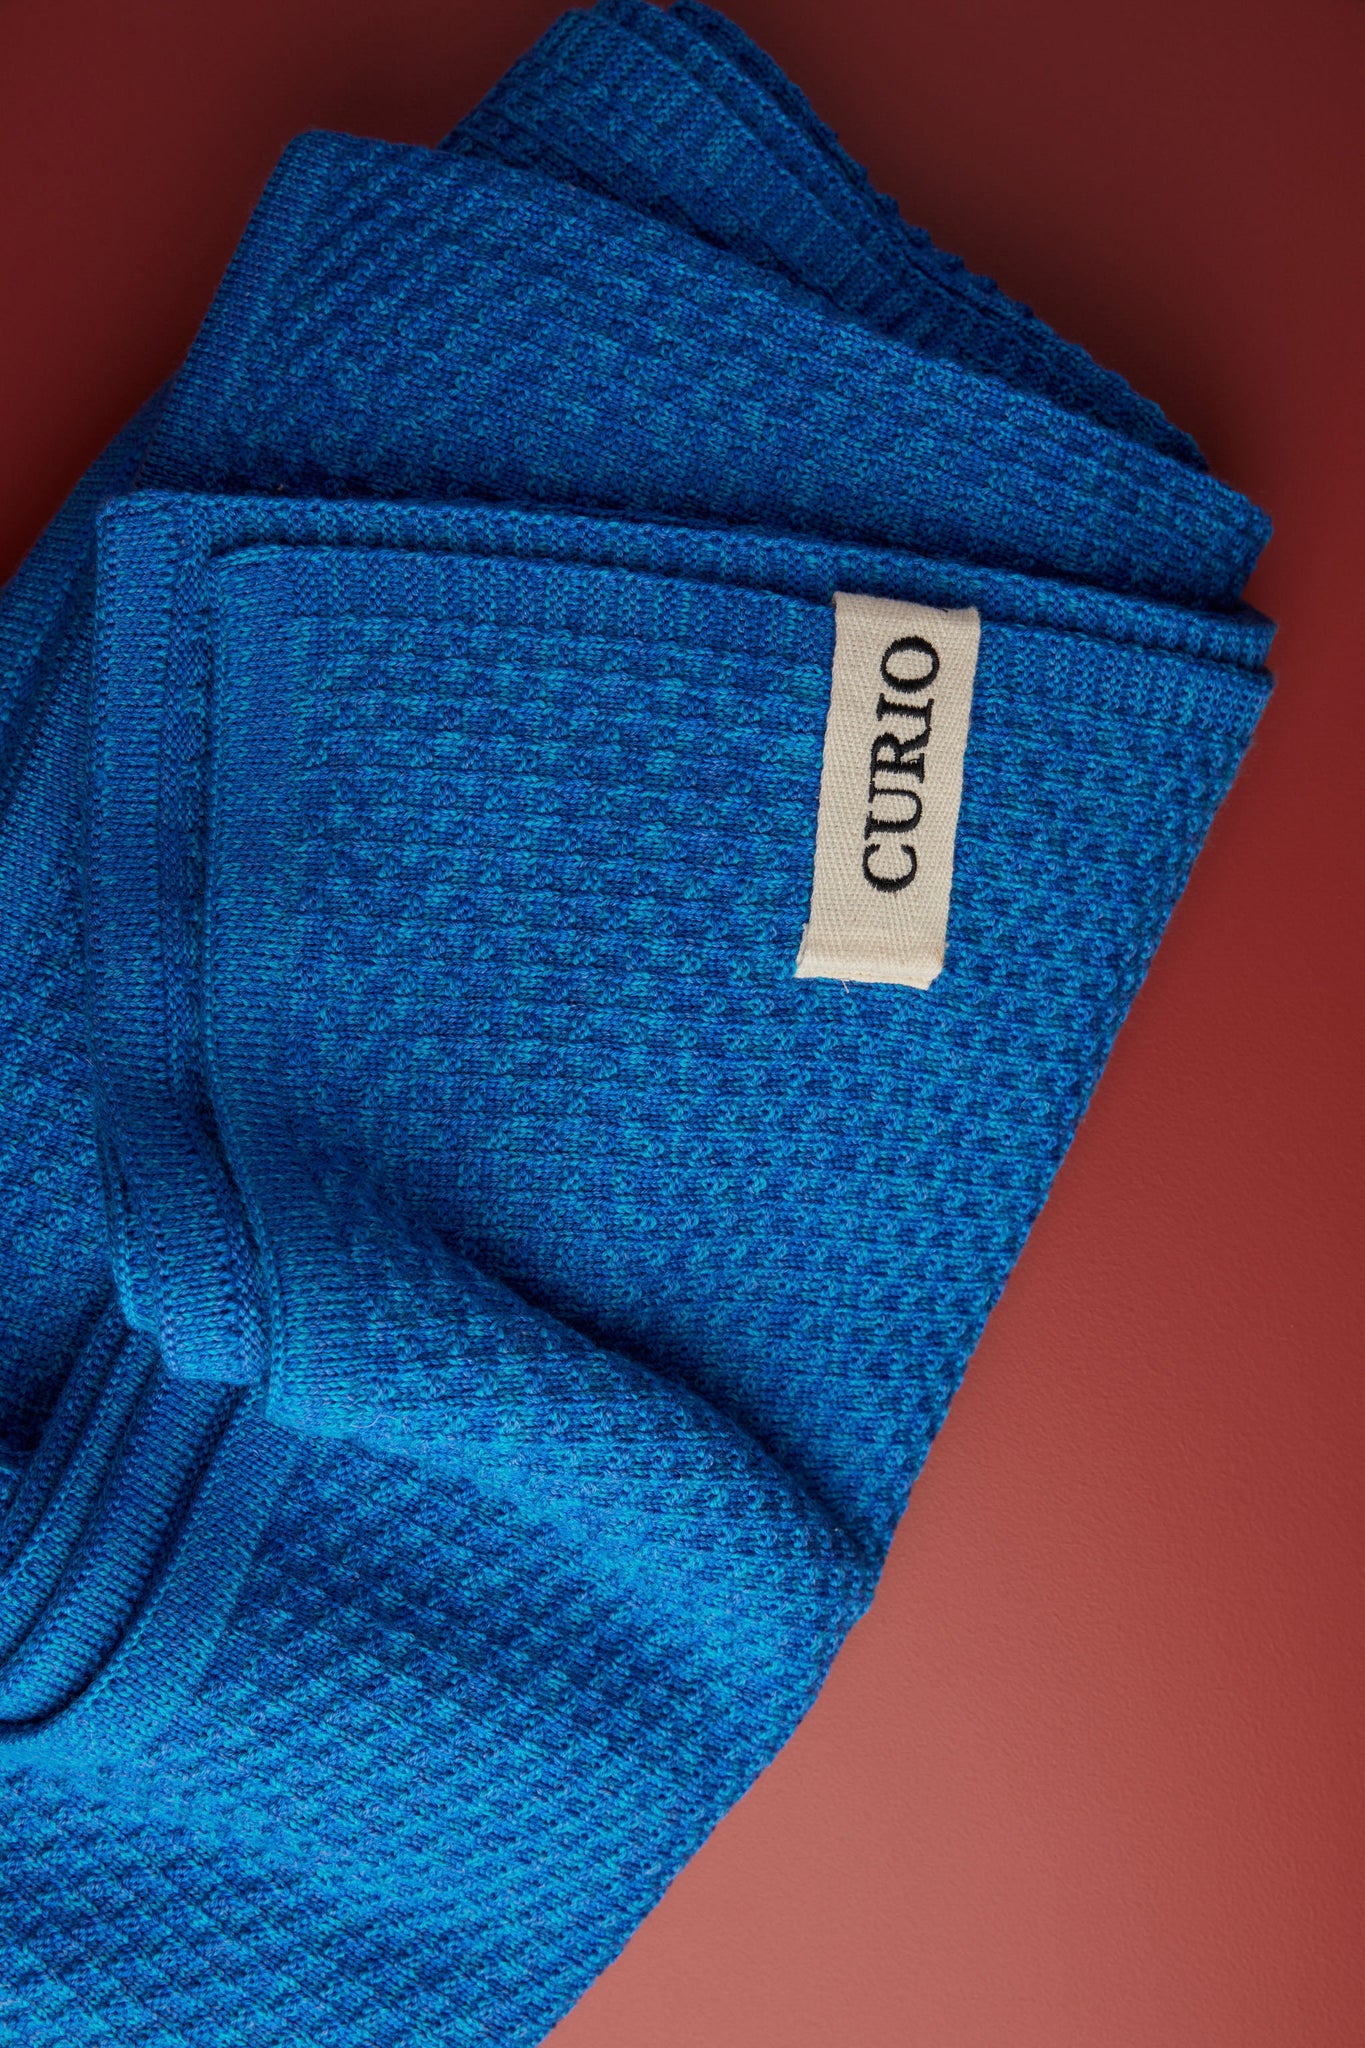 Curio - Merino Wool Queen Blanket, Yves Klein Blue Texture